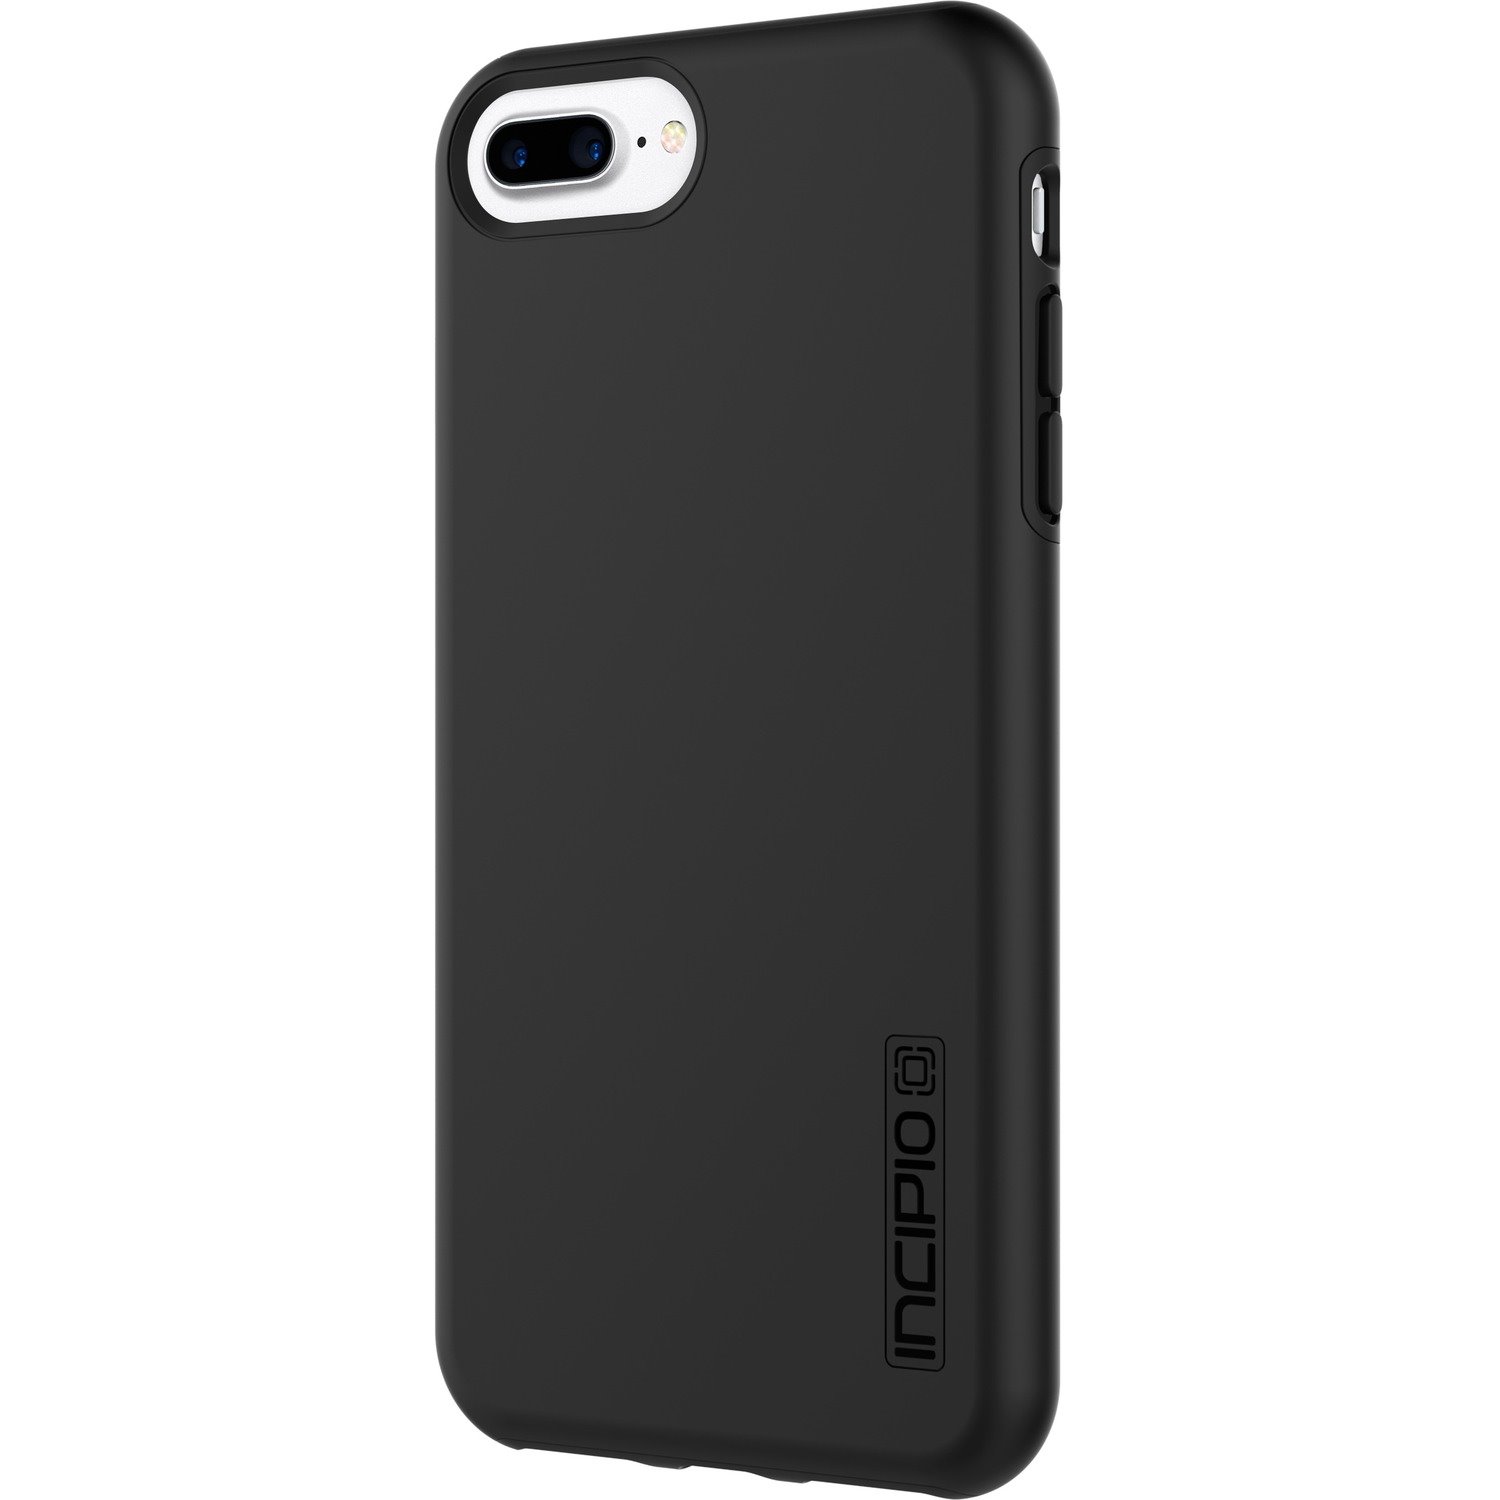 Incipio DualPro for iPhone 8 Plus, iPhone 7 Plus, & iPhone 6/6s Plus - Black/Black